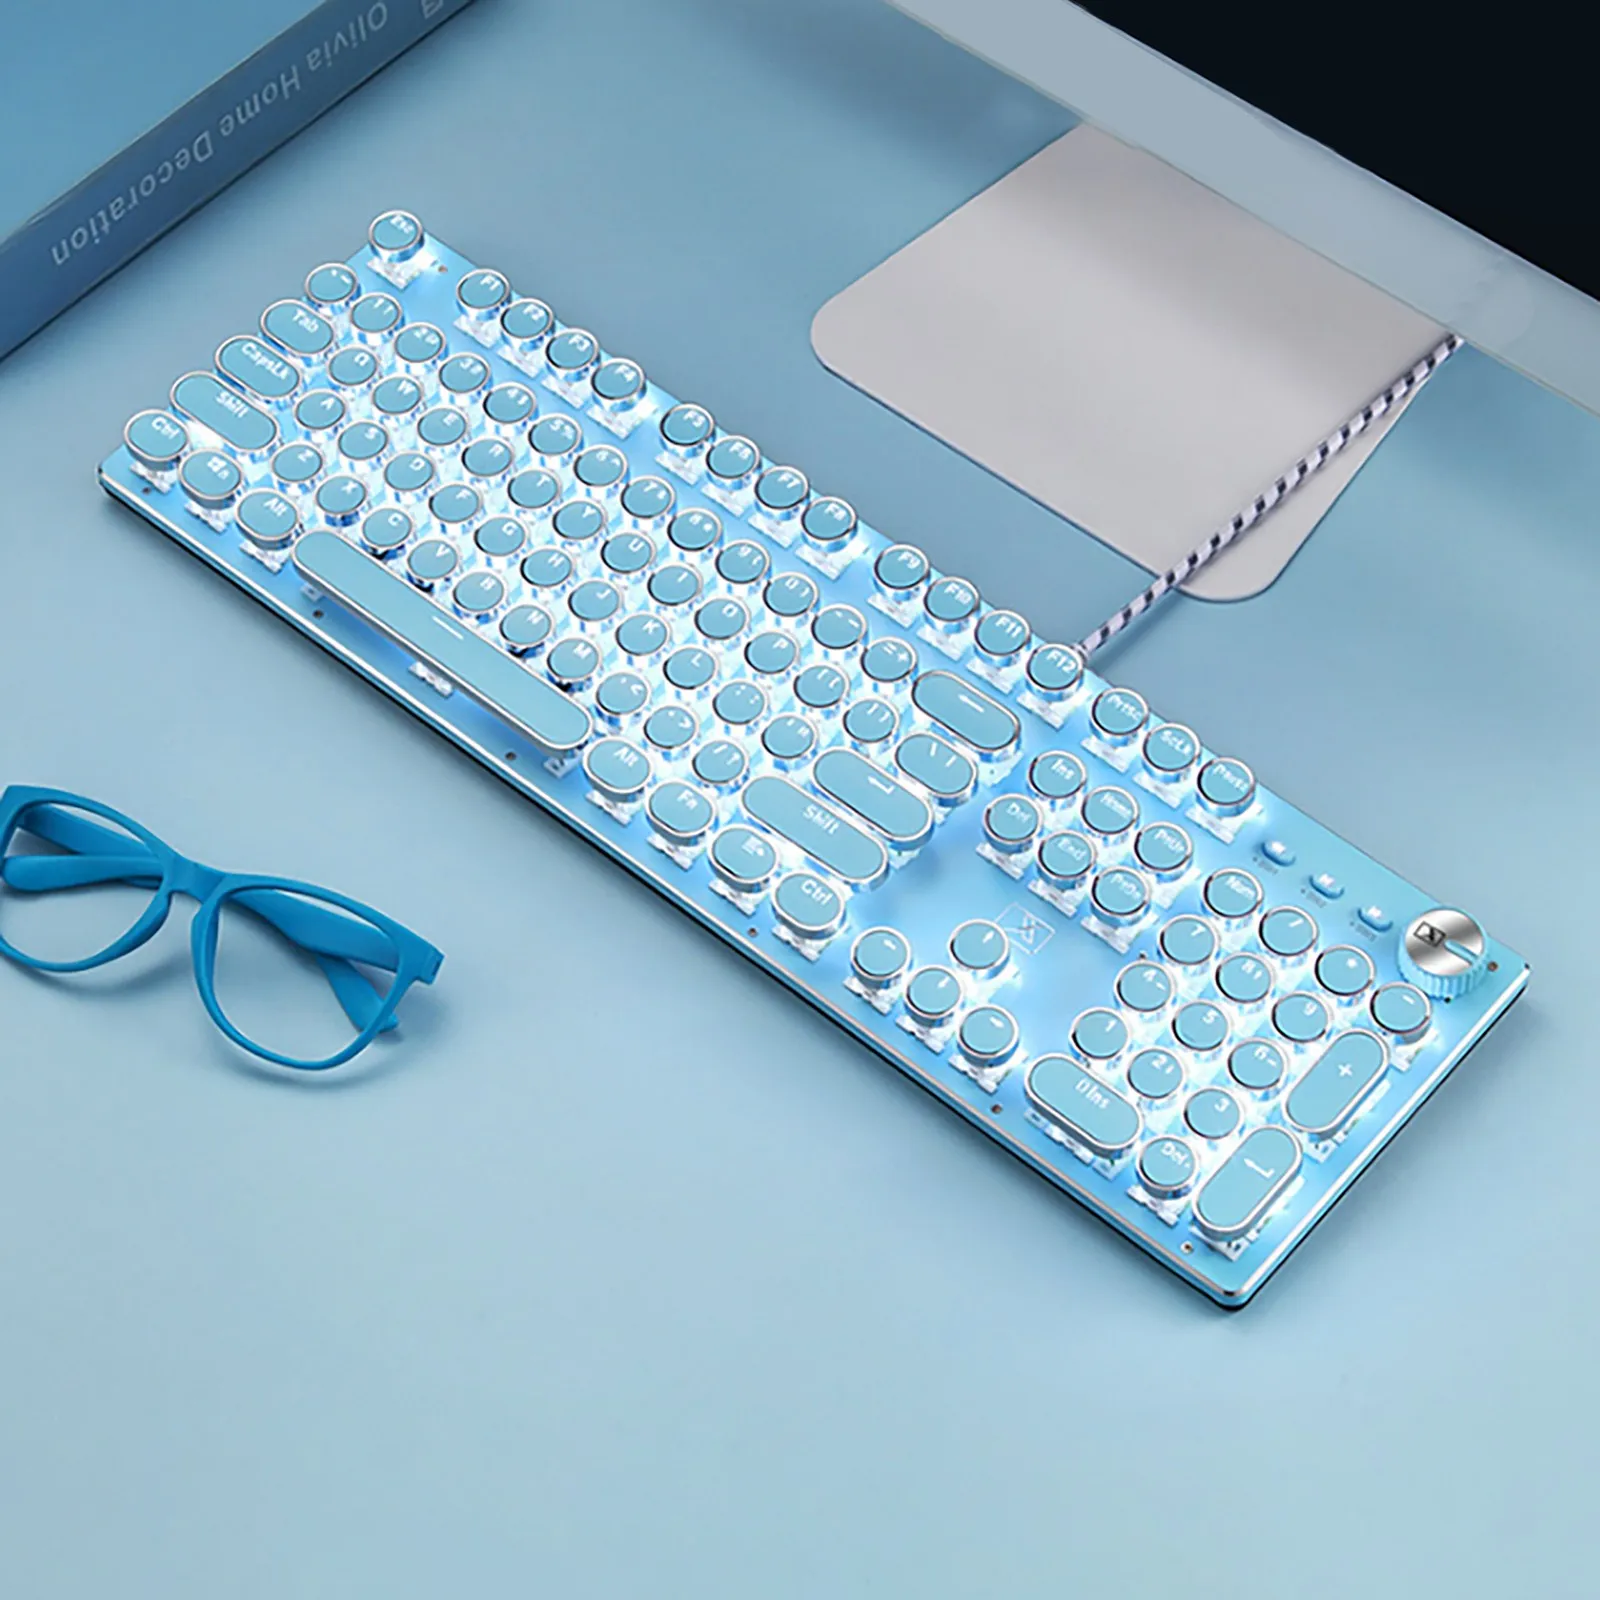 

Профессиональная Проводная Механическая игровая клавиатура со светодиодной подсветкой в стиле панк, новая модель 2021 года, подходит для офи...